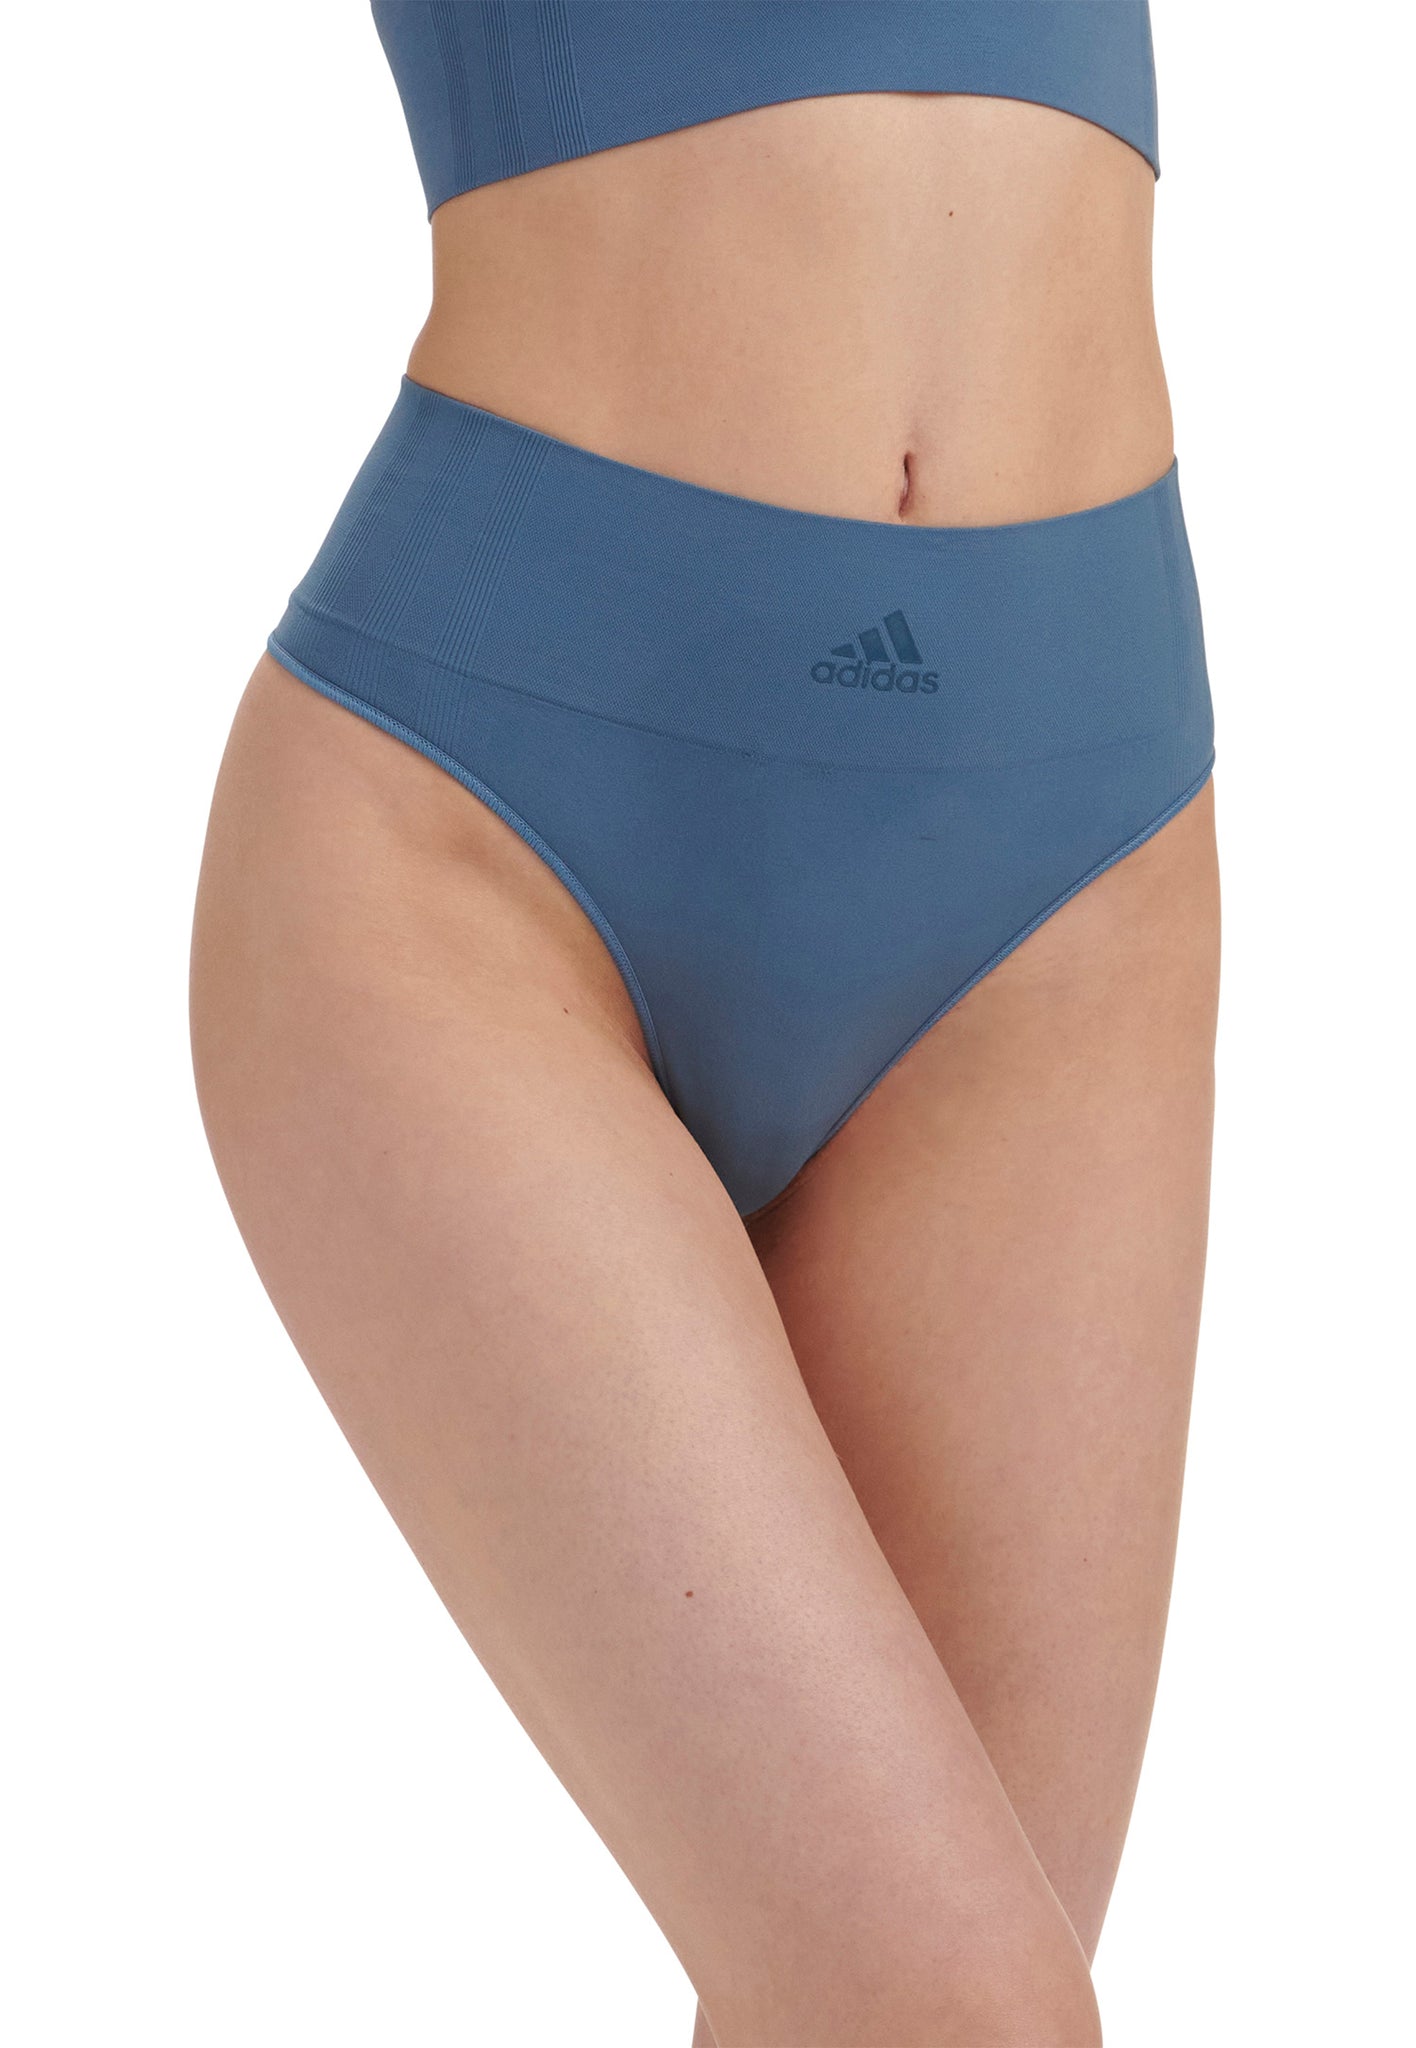 Buy Modern Flex Cotton Triangle Bra | adidas underwear